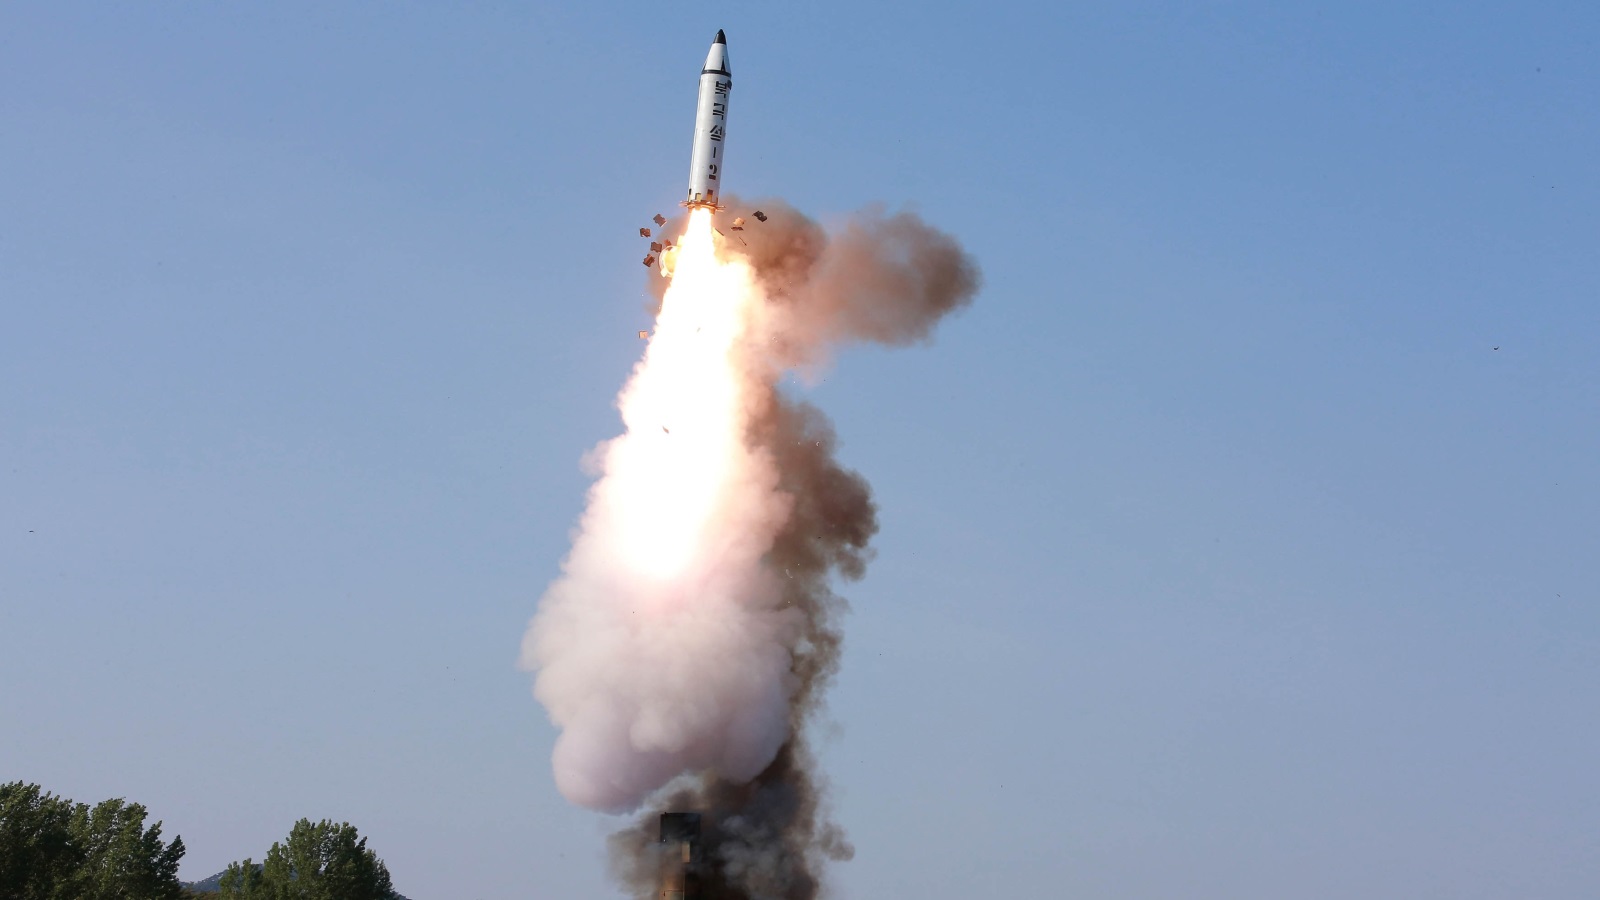 ‪كوريا الشمالية أجرت الأحد تجربة صاروخ بالستي متوسط المدى‬ كوريا الشمالية أجرت الأحد تجربة صاروخ بالستي متوسط المدى (رويترز)